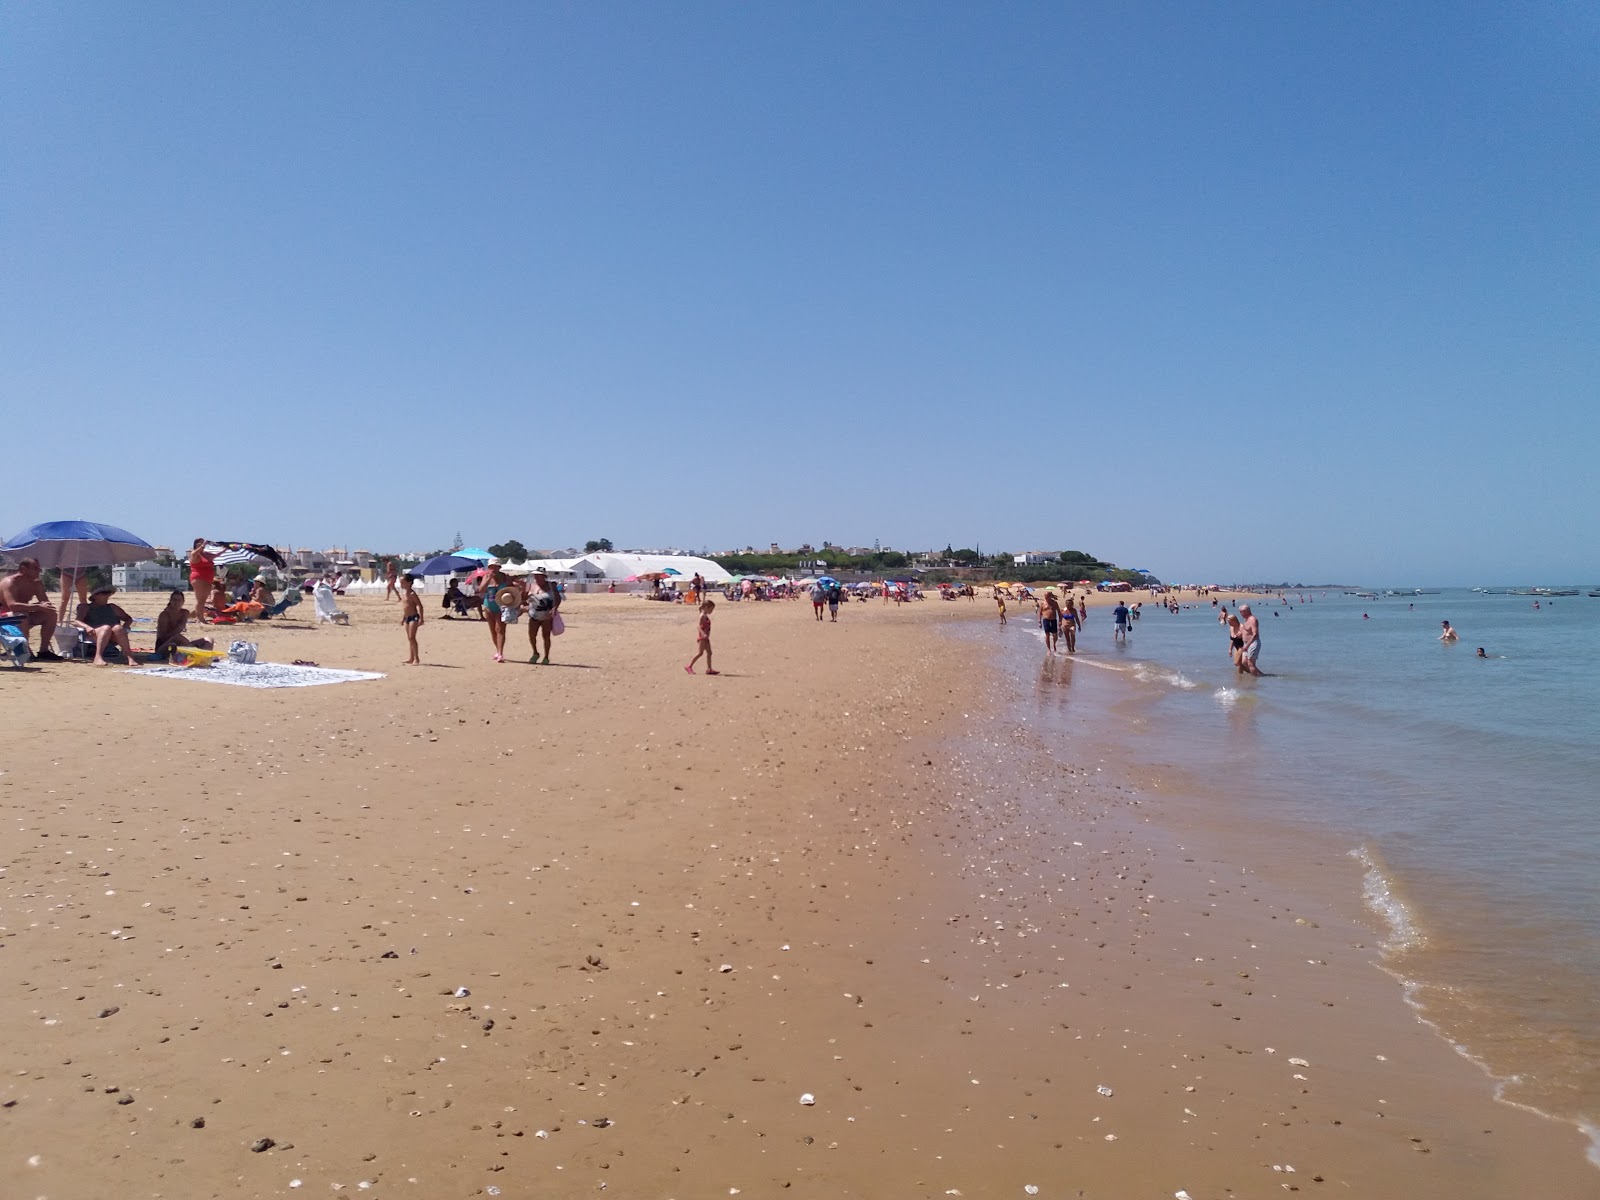 Playa de las Piletas'in fotoğrafı parlak kum yüzey ile